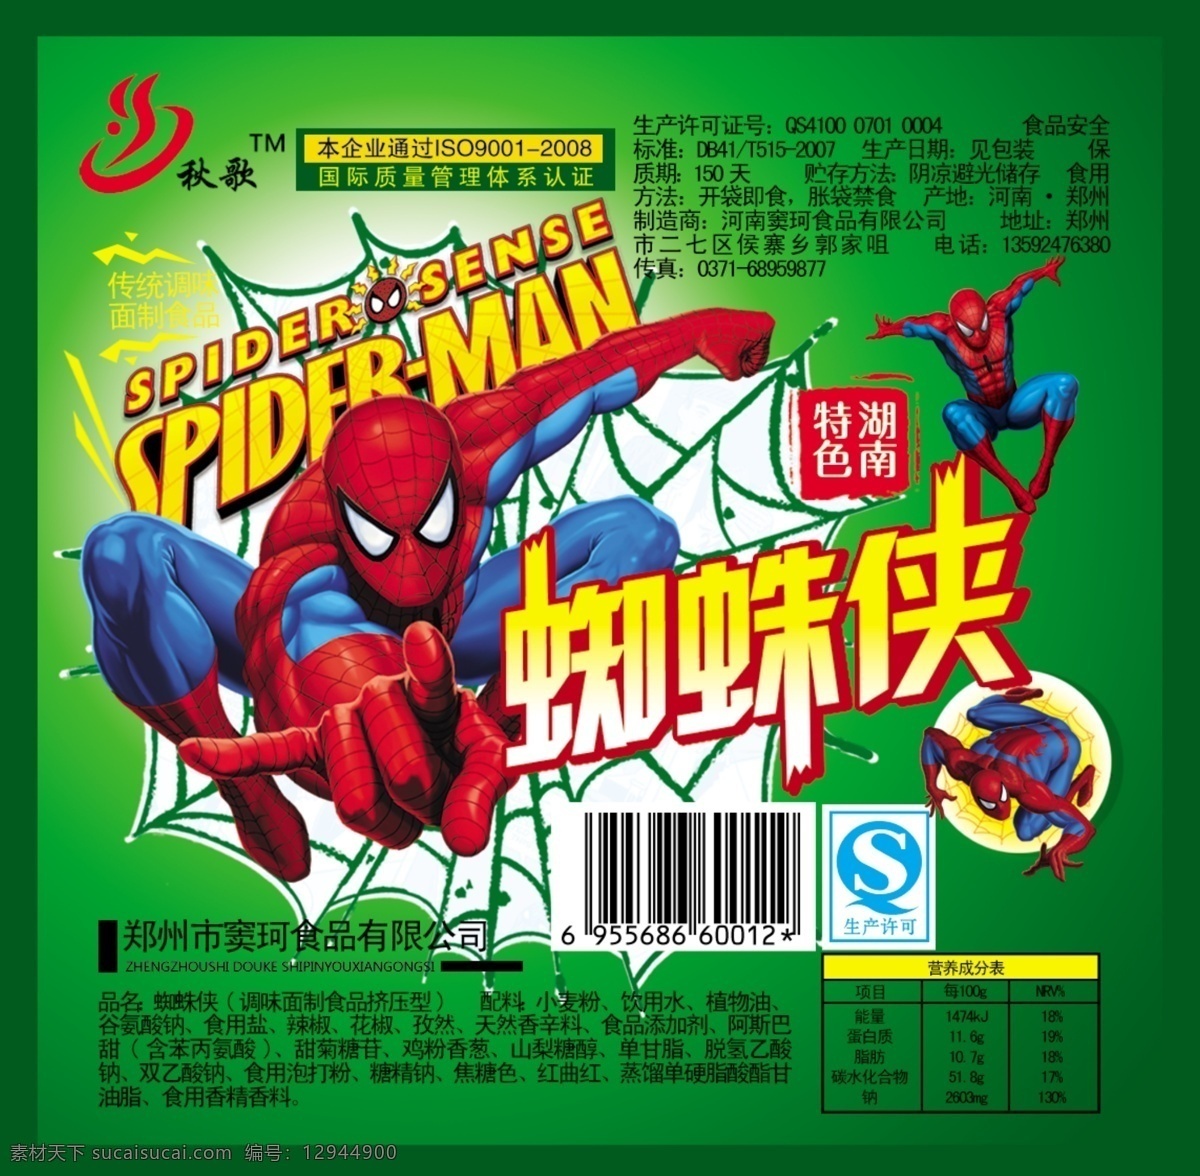 蜘蛛侠 包装 包装设计 动画 广告设计模板 麻辣 食品 源文件 模板下载 psd源文件